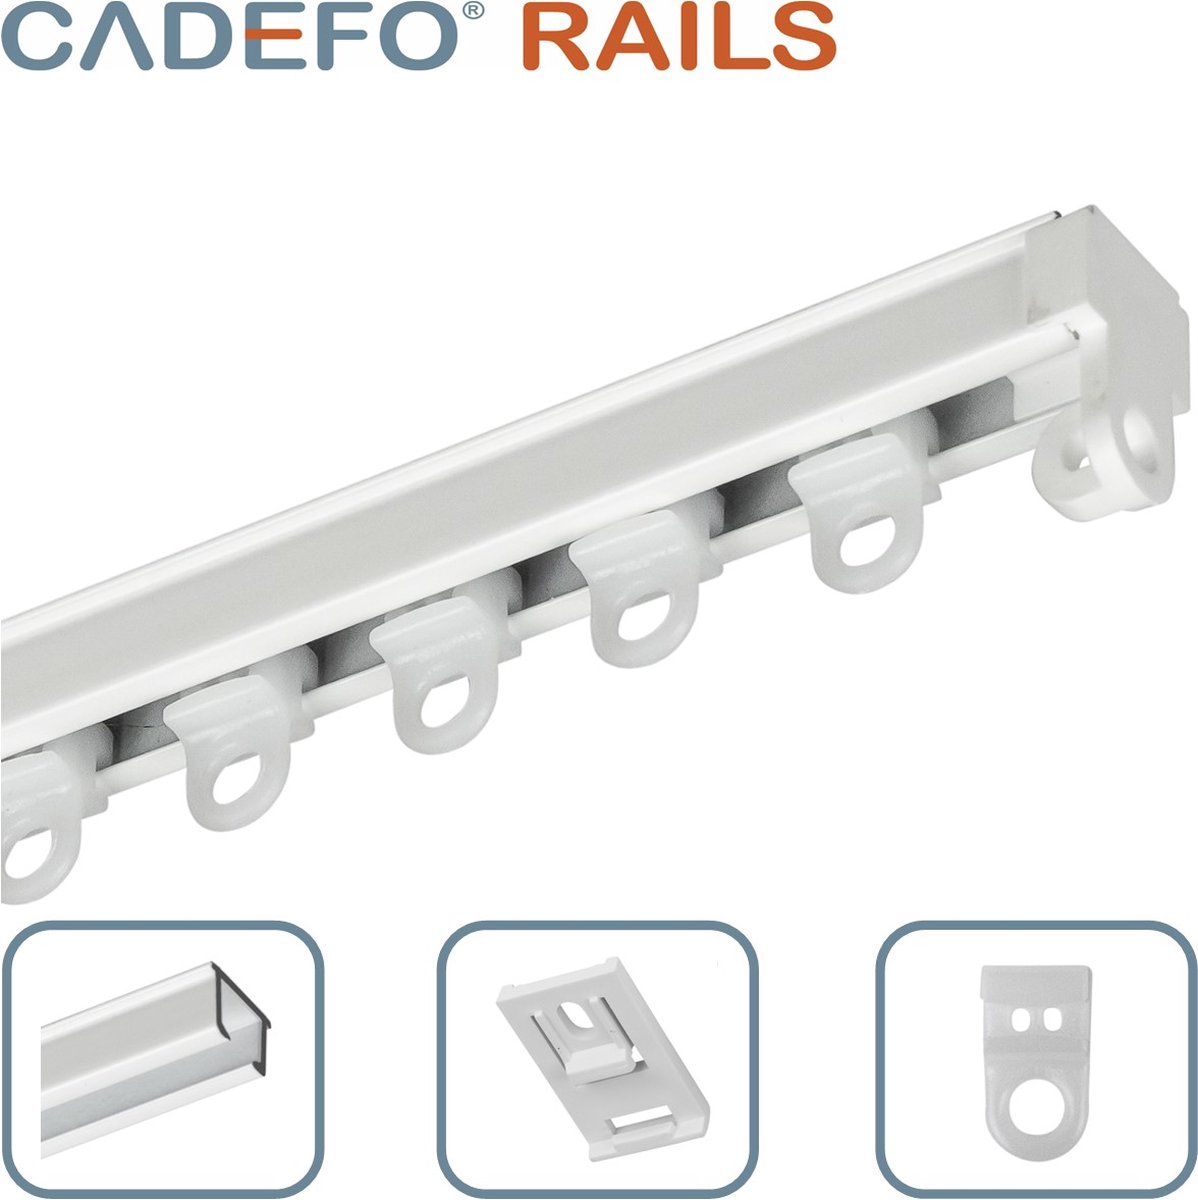 CADEFO RAILS (251 - 300 cm) Gordijnrails - Compleet op maat! - UIT 1 STUK - Leverbaar tot 6 meter - Plafondbevestiging - Lengte 288 cm